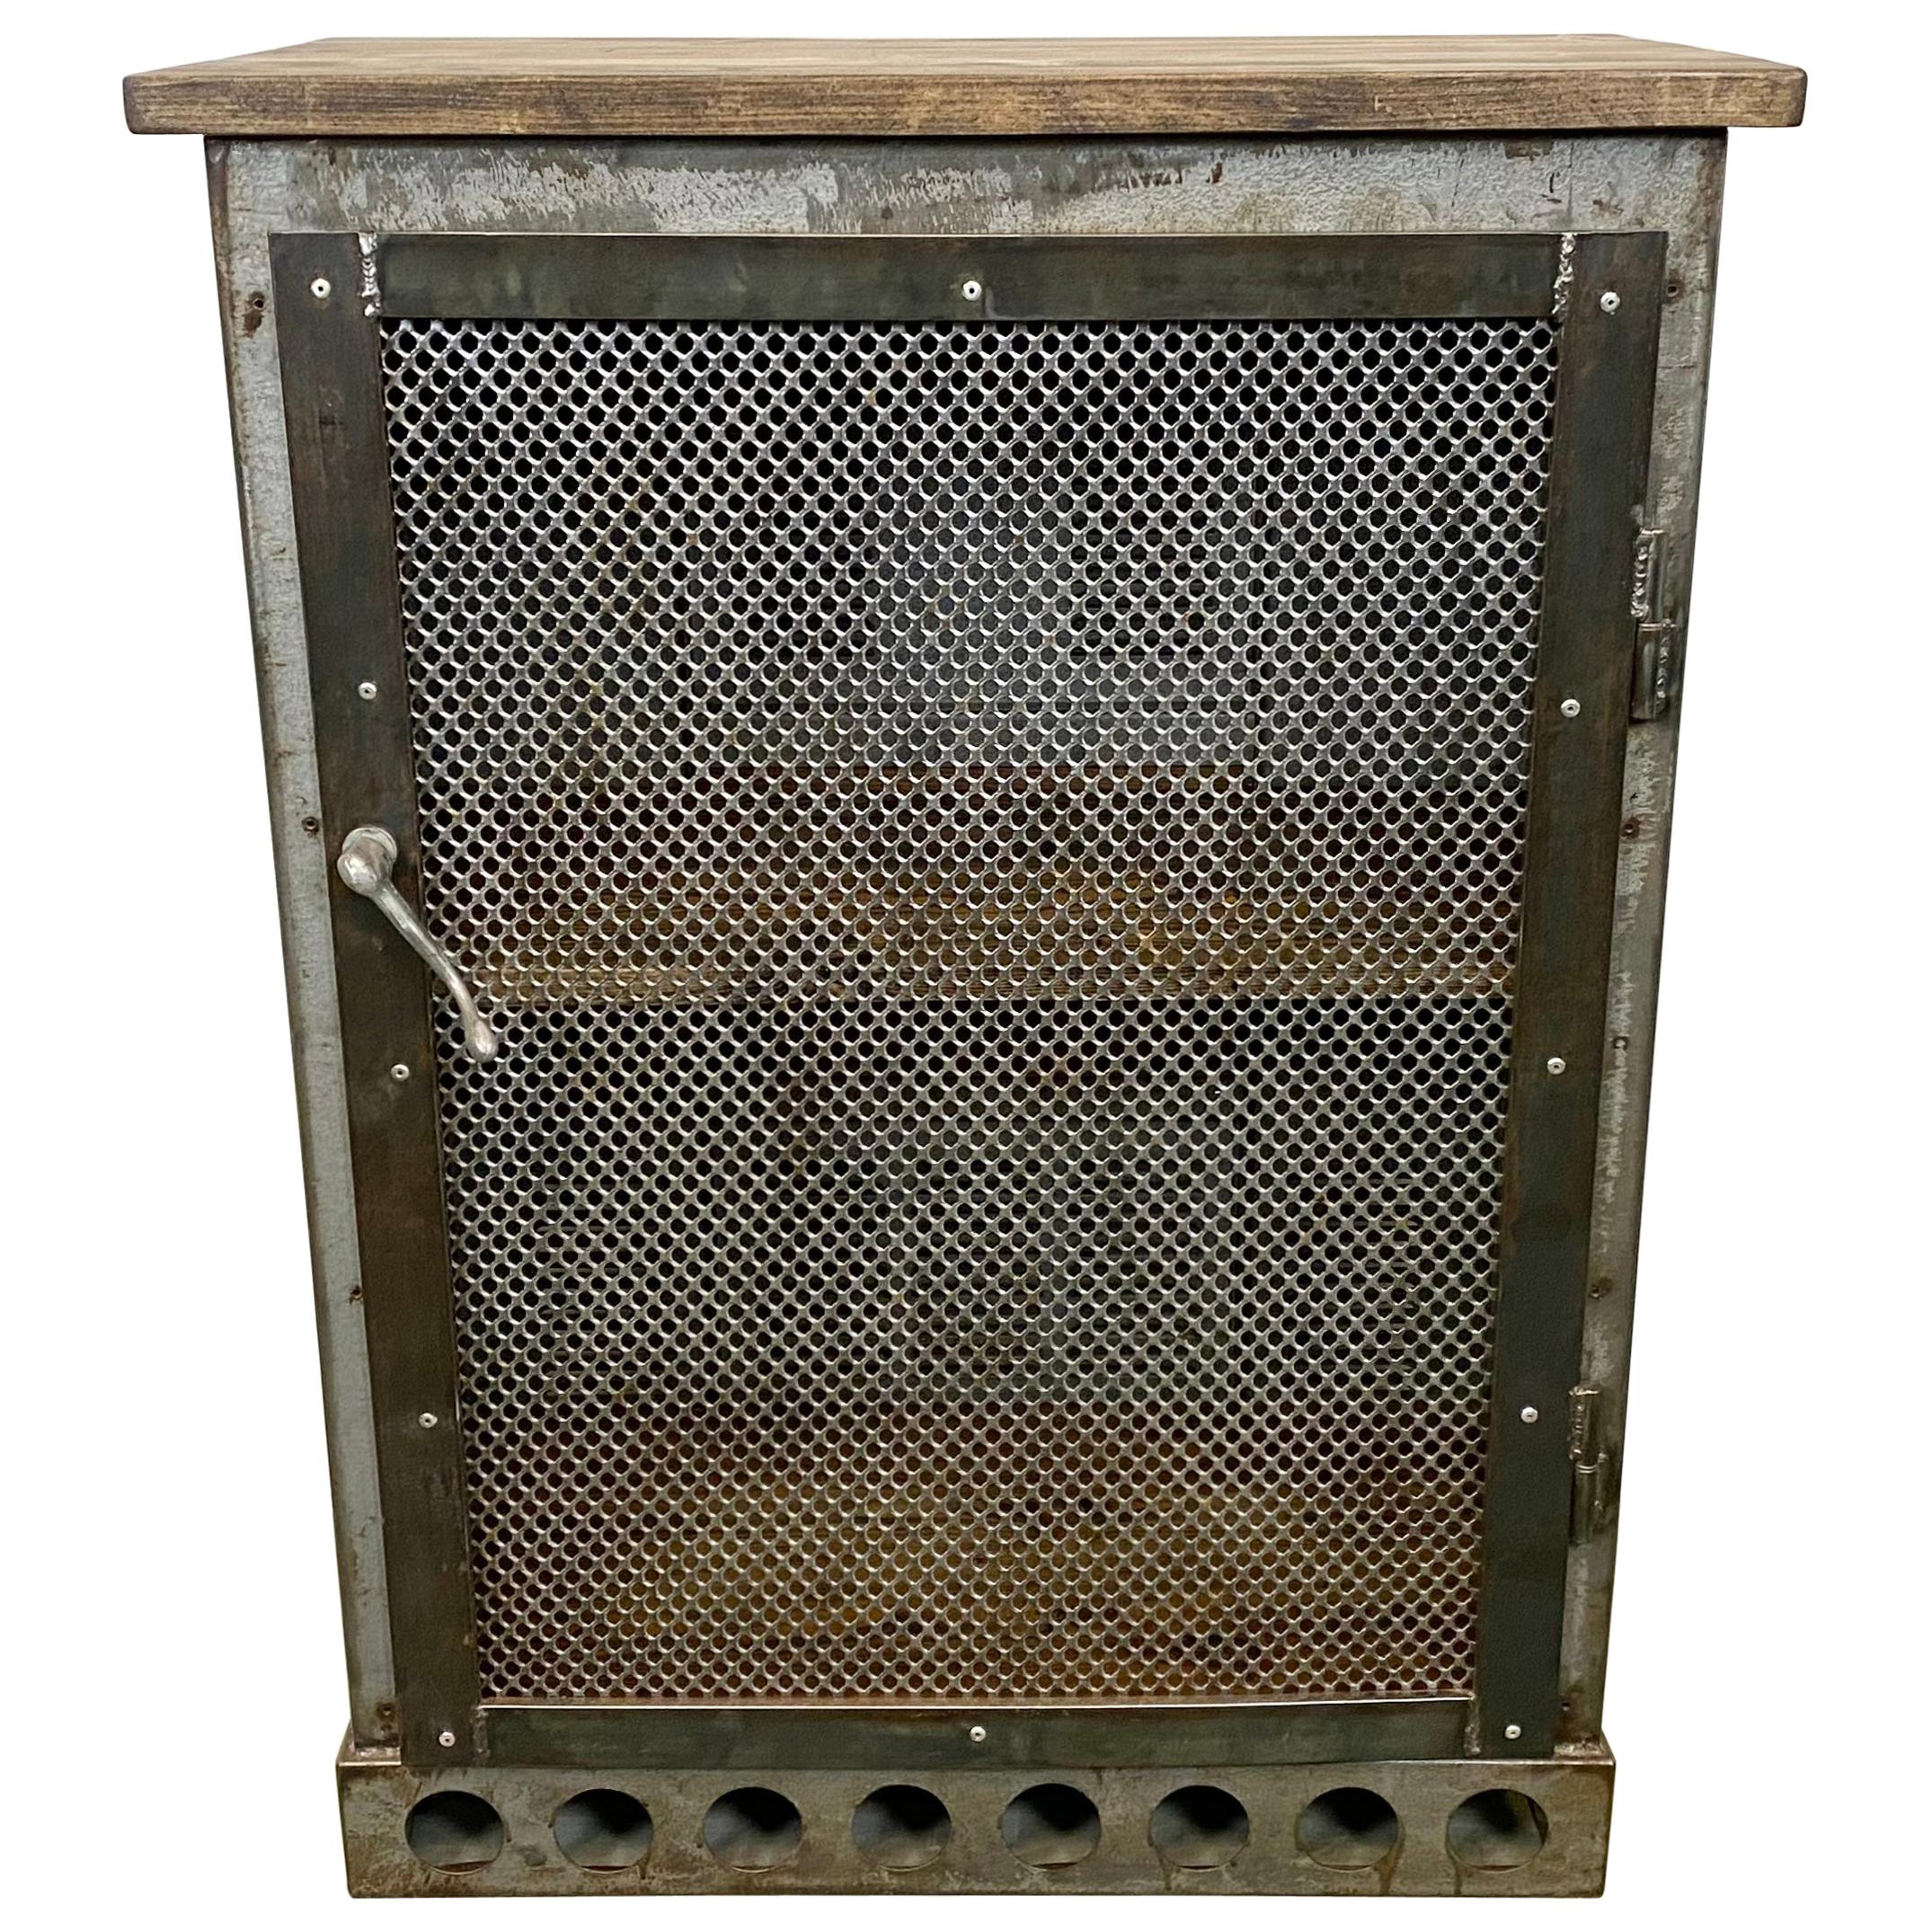 Industrial Iron Cabinet with Mesh Door, 1960s